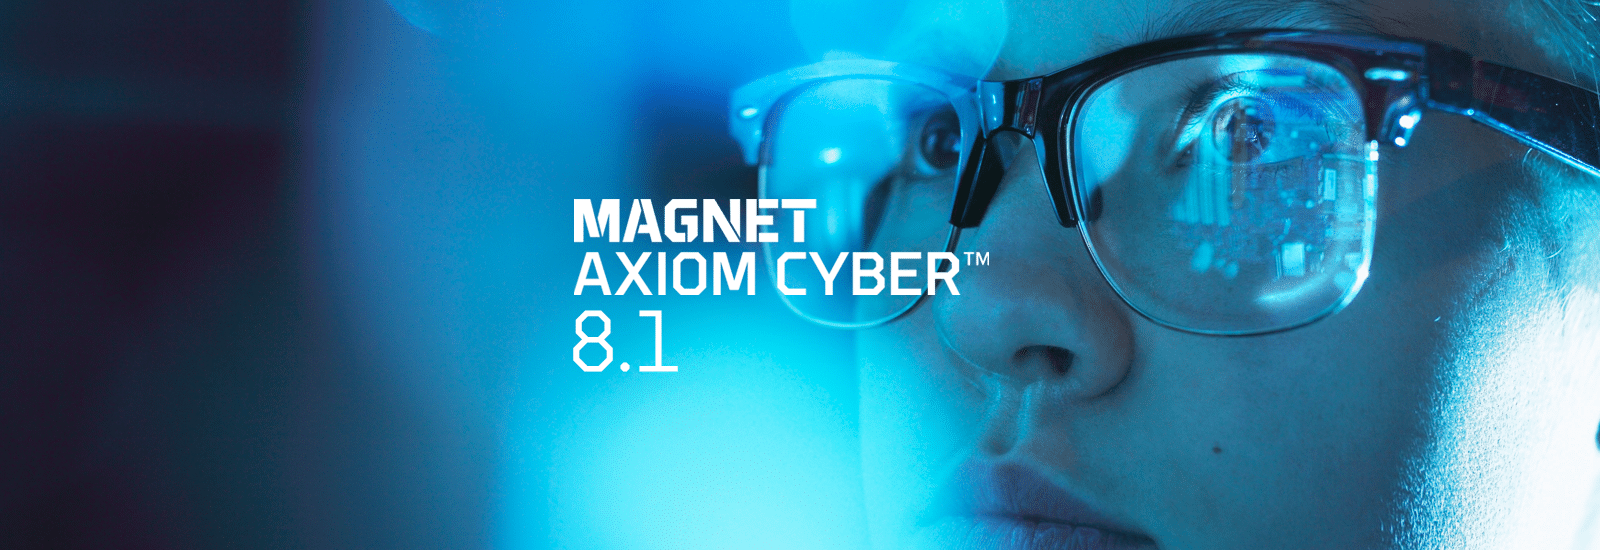 Magnet Axiom Cyber 8.1